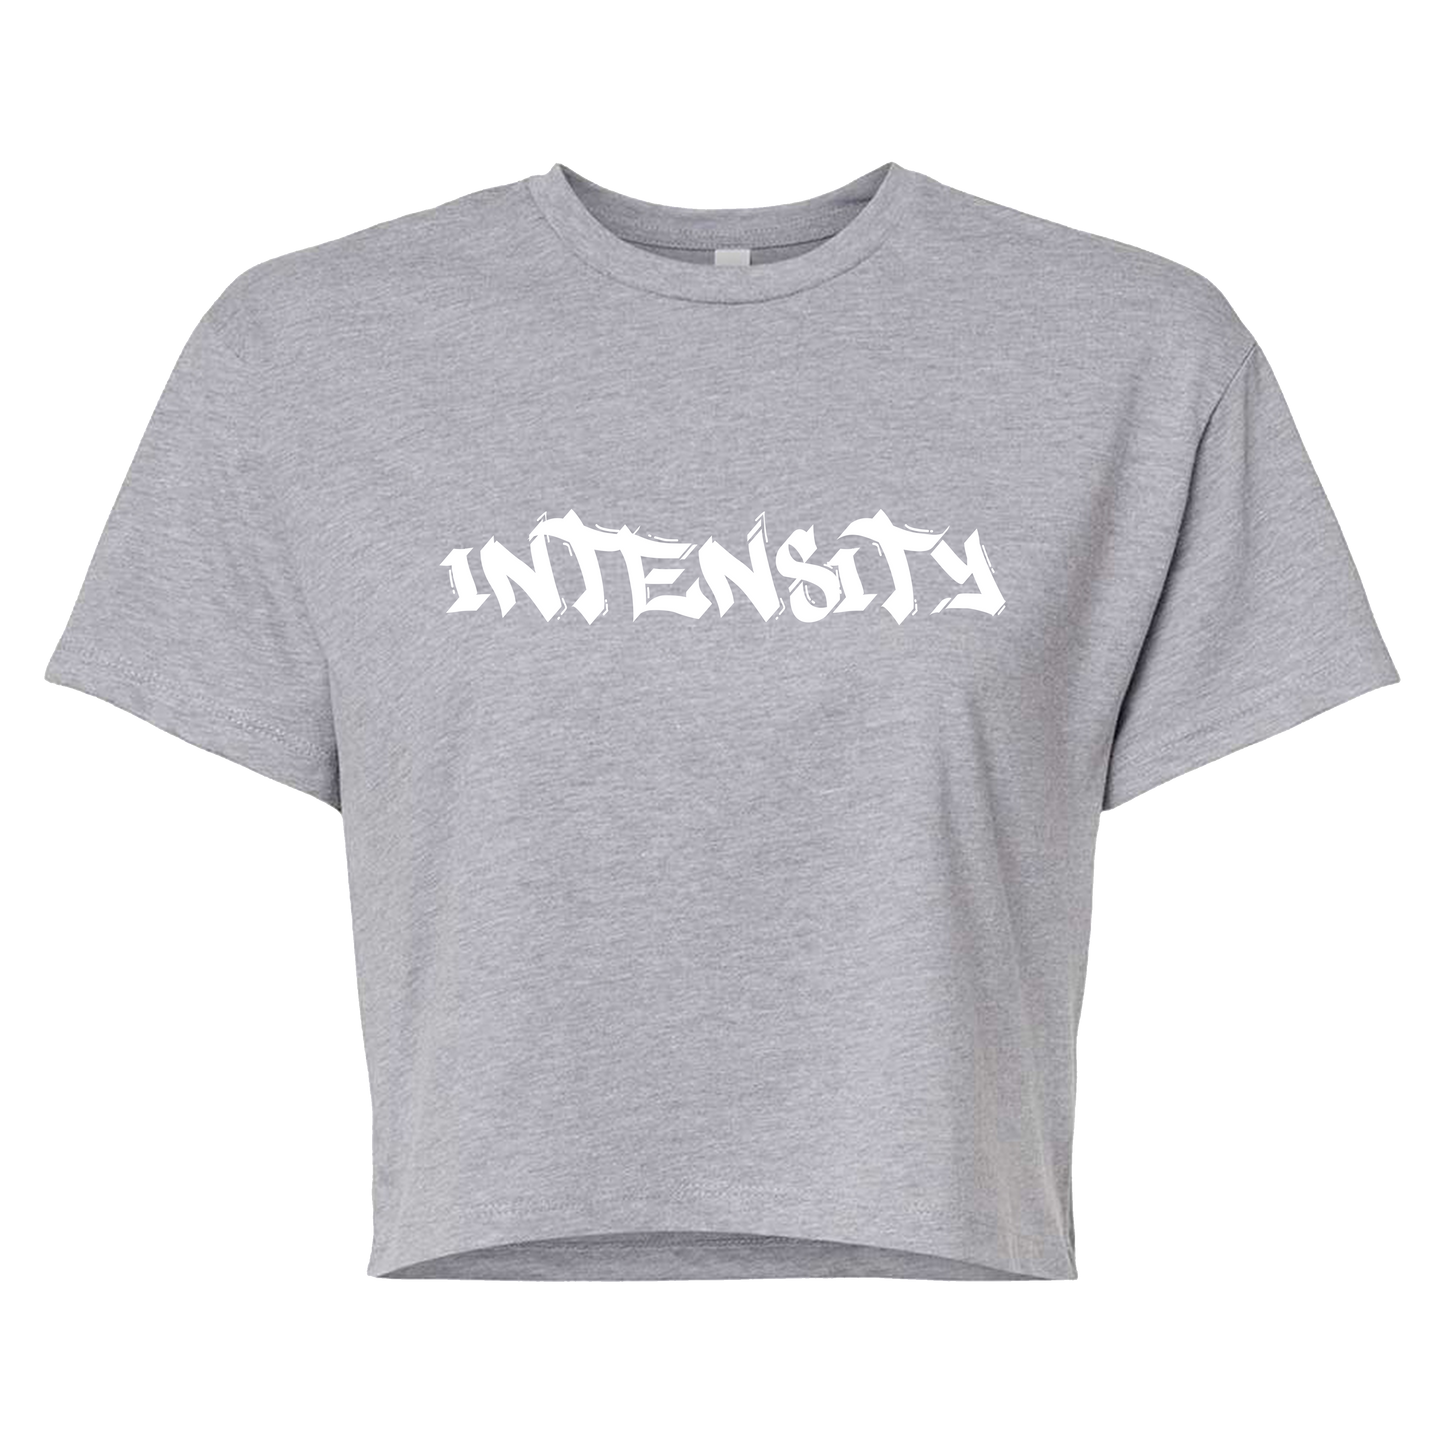 Women's "INTENSITY" Solid Grey Crop Top T-Shirt